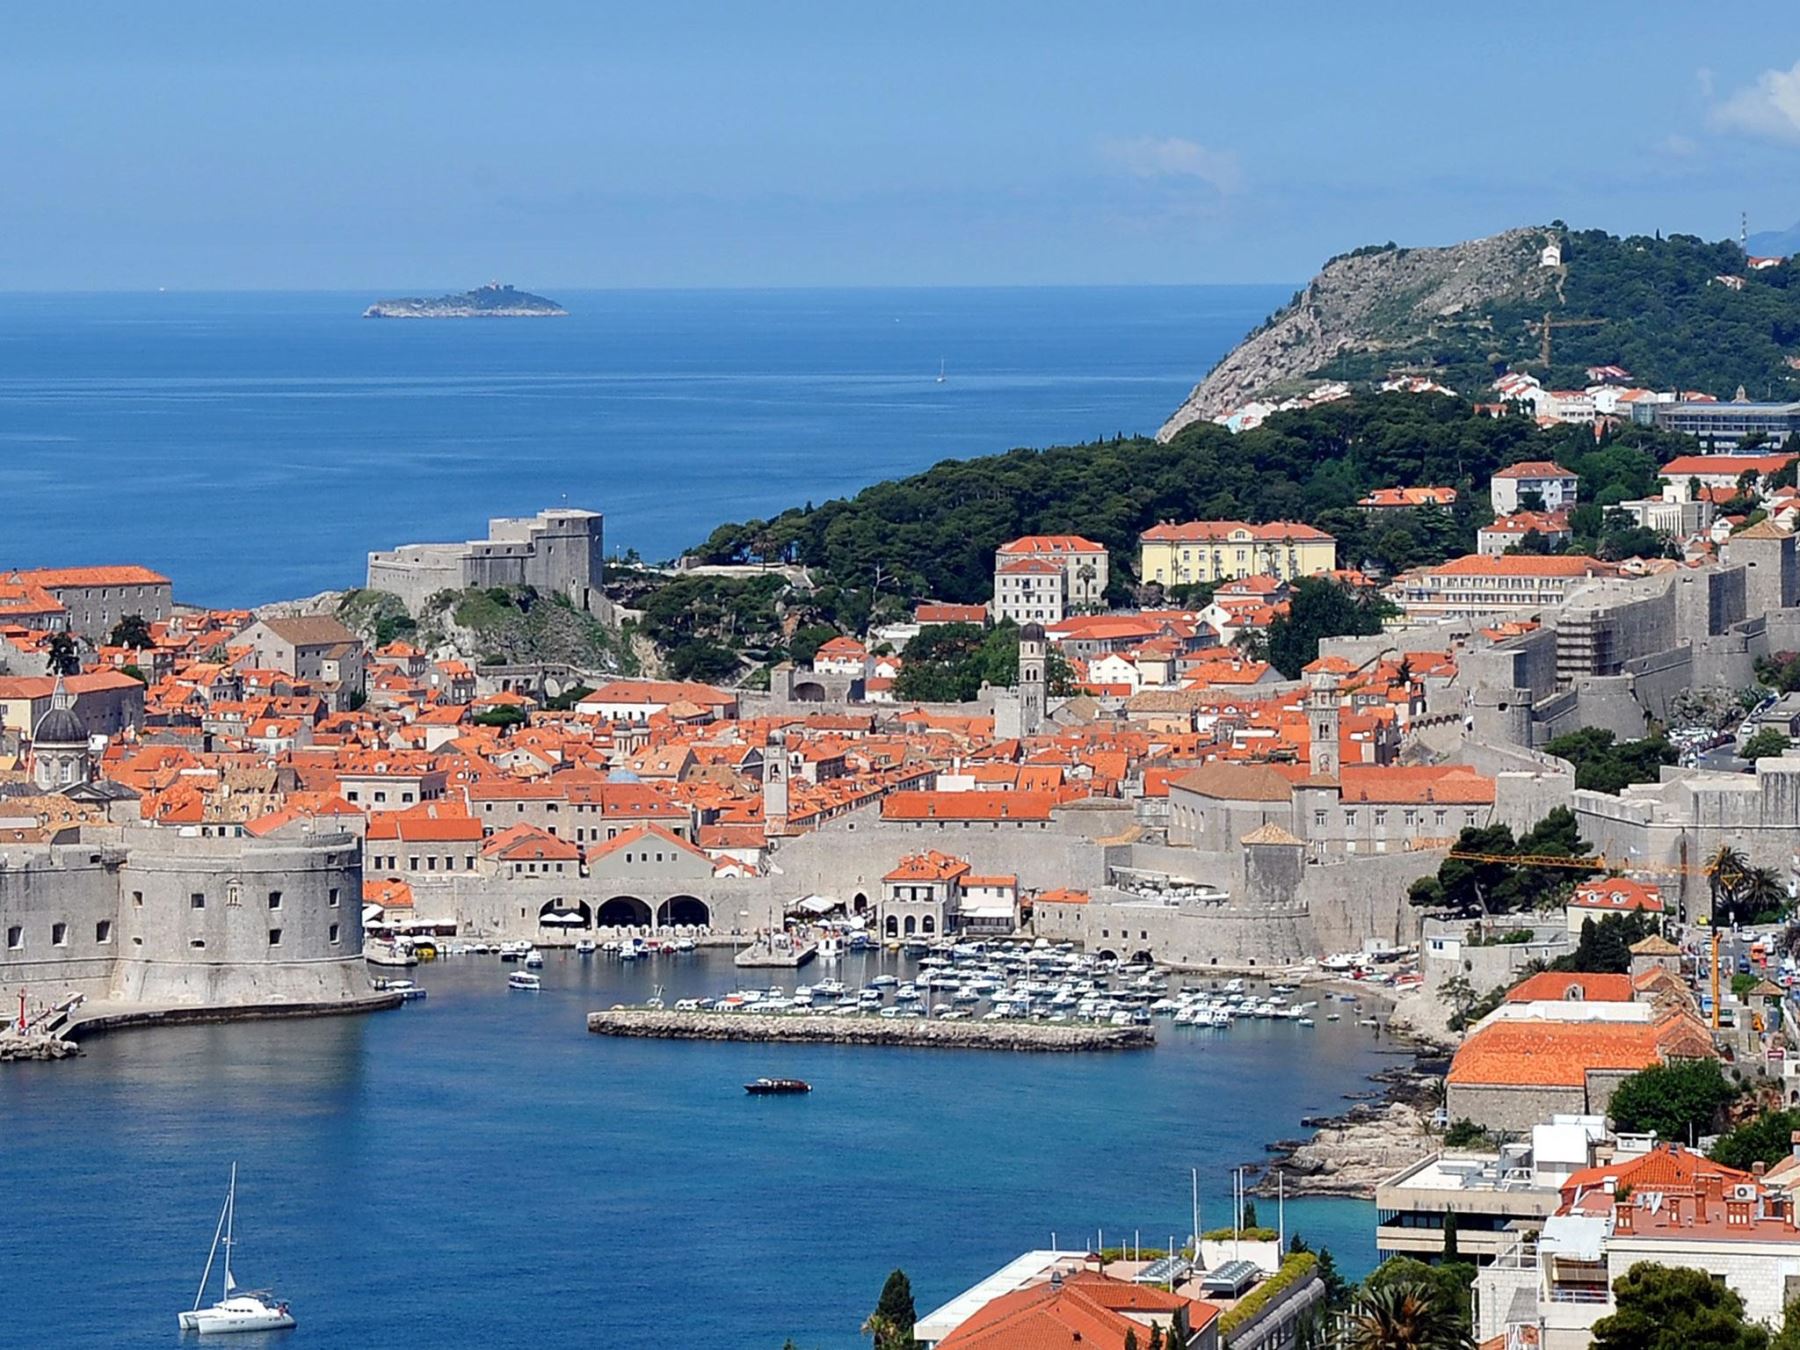 La ciudad medieval de Dubrovnik, uno de los atractivos turísticos de Croacia. Foto: AFP.